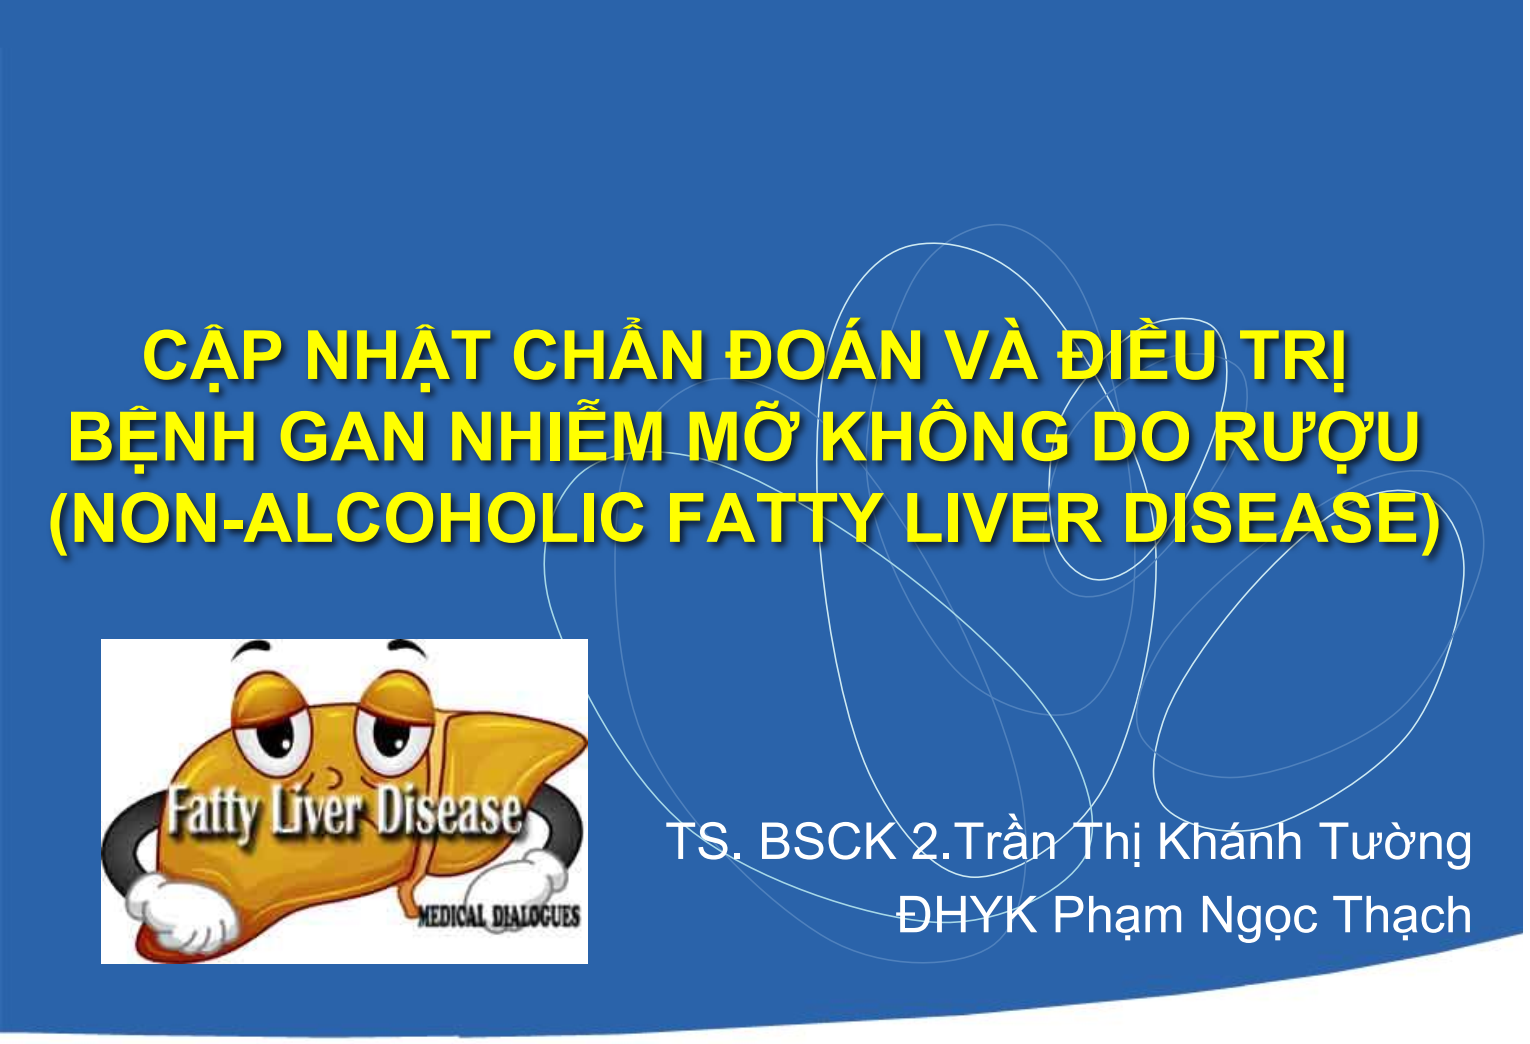 Cap-nhat-chan-doan-dieu-tri-benh-gan-nhiem-mo-khong-do-ruou-non-alcoholic-fatty-liver-disease